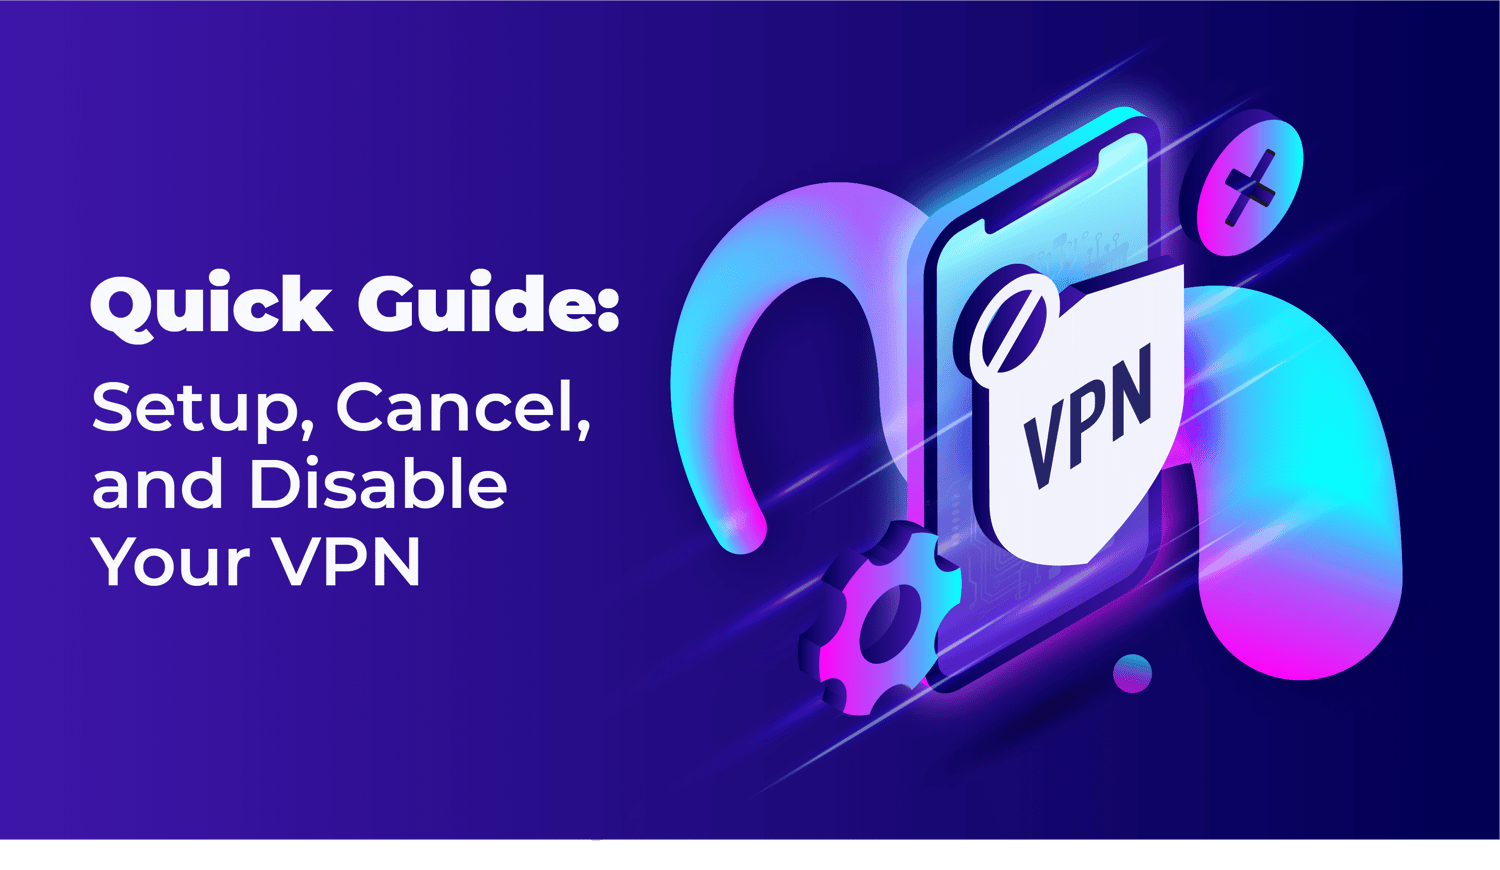 دليل سريع: إعداد، إلغاء، وتعطيل VPN الخاص بك